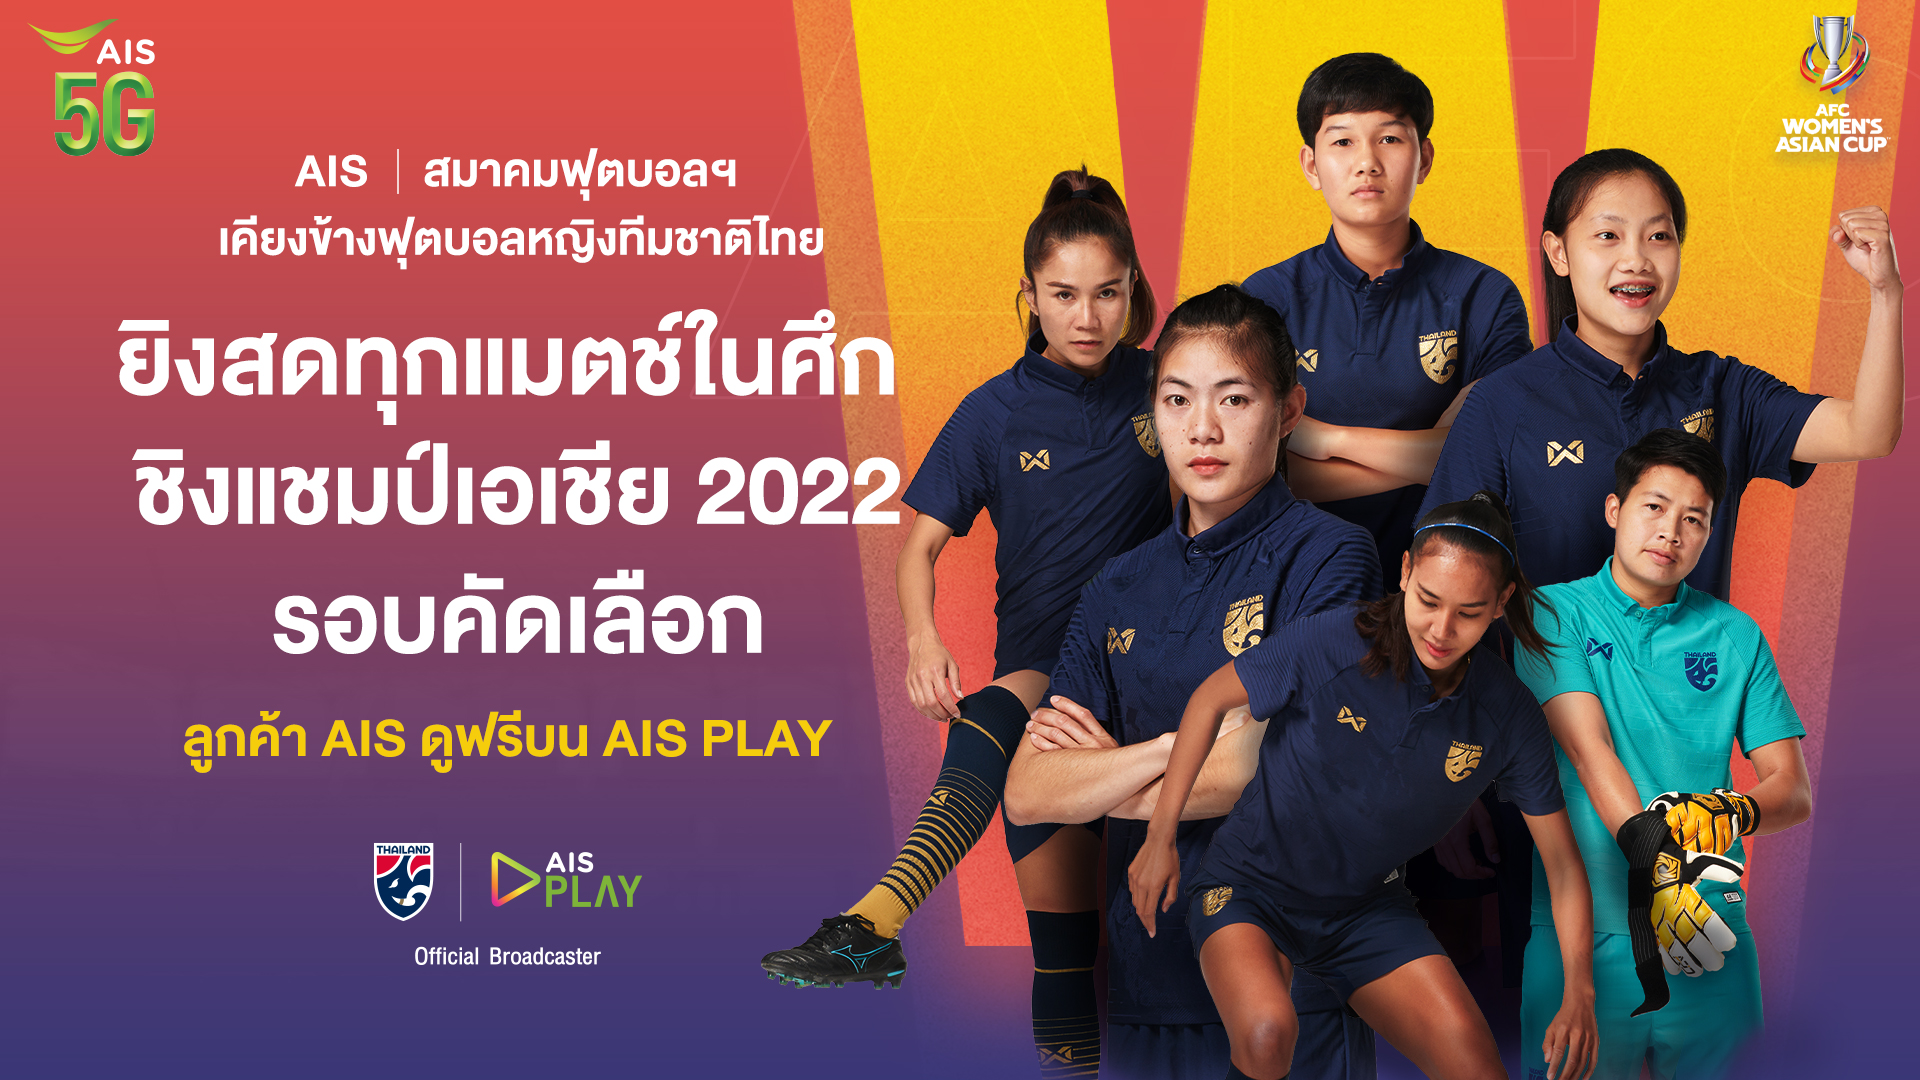 AIS 5G ผนึก สมาคมฟุตบอลฯ ชวนแฟนบอลส่งใจเชียร์ทัพ ชบาแก้ว ในศึก ชิงแชมป์เอเชีย 2022 รอบคัดเลือก